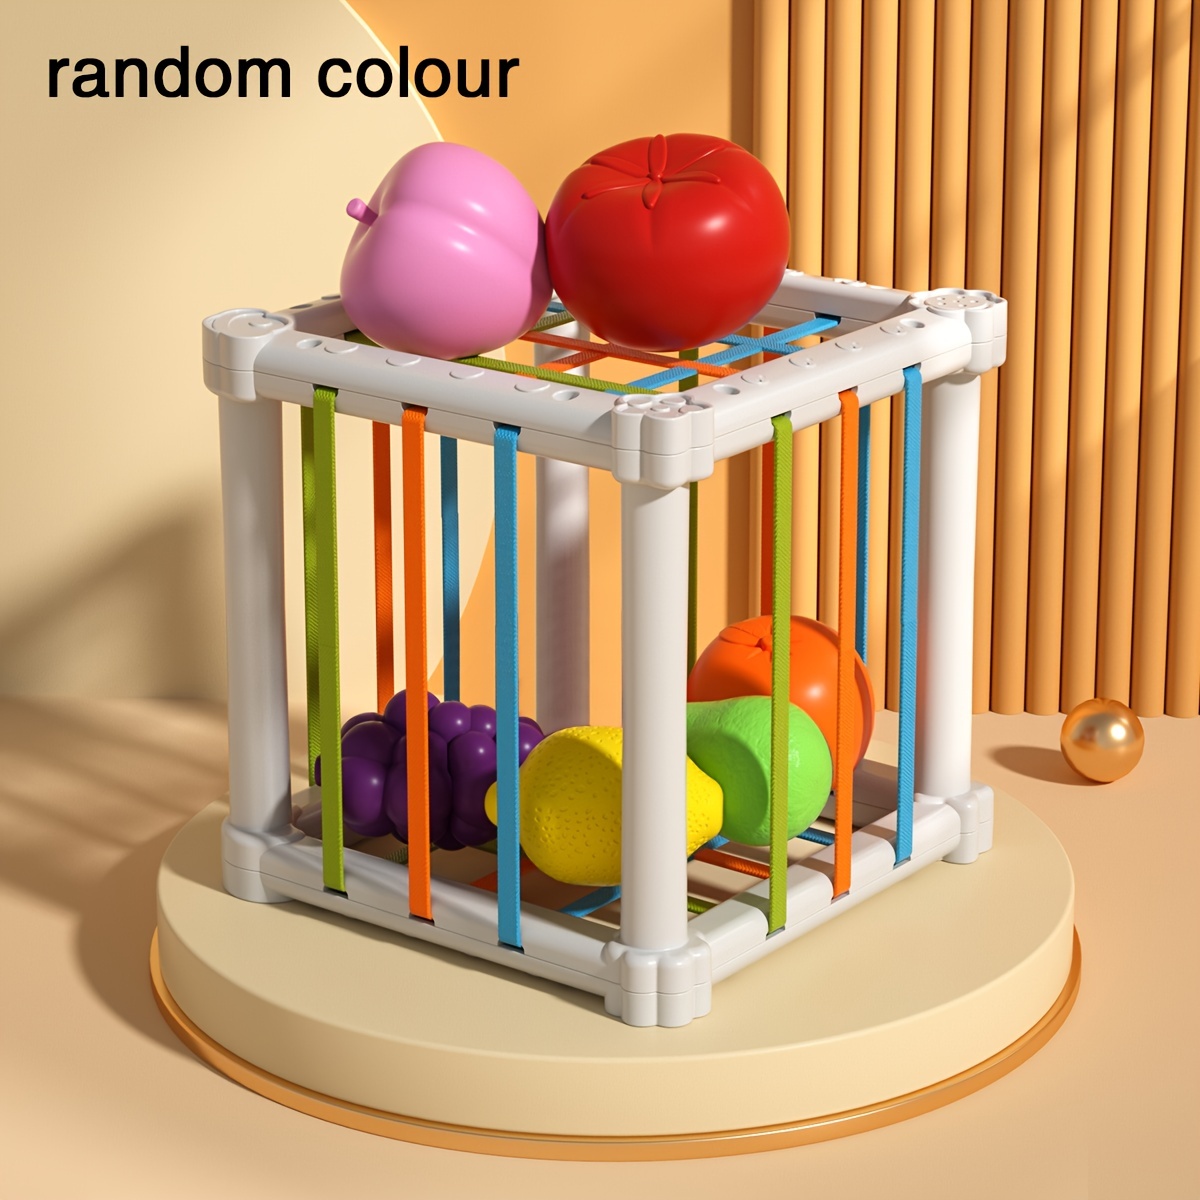 6 Peças/Conjunto Aleatório Bebê Aprendizagem Brinquedo Educativo  Inteligente Ovo Brinquedo Jogos Forma Correspondência Classificadores  Brinquedos Montessori Ovos Brinquedos Para Crianças